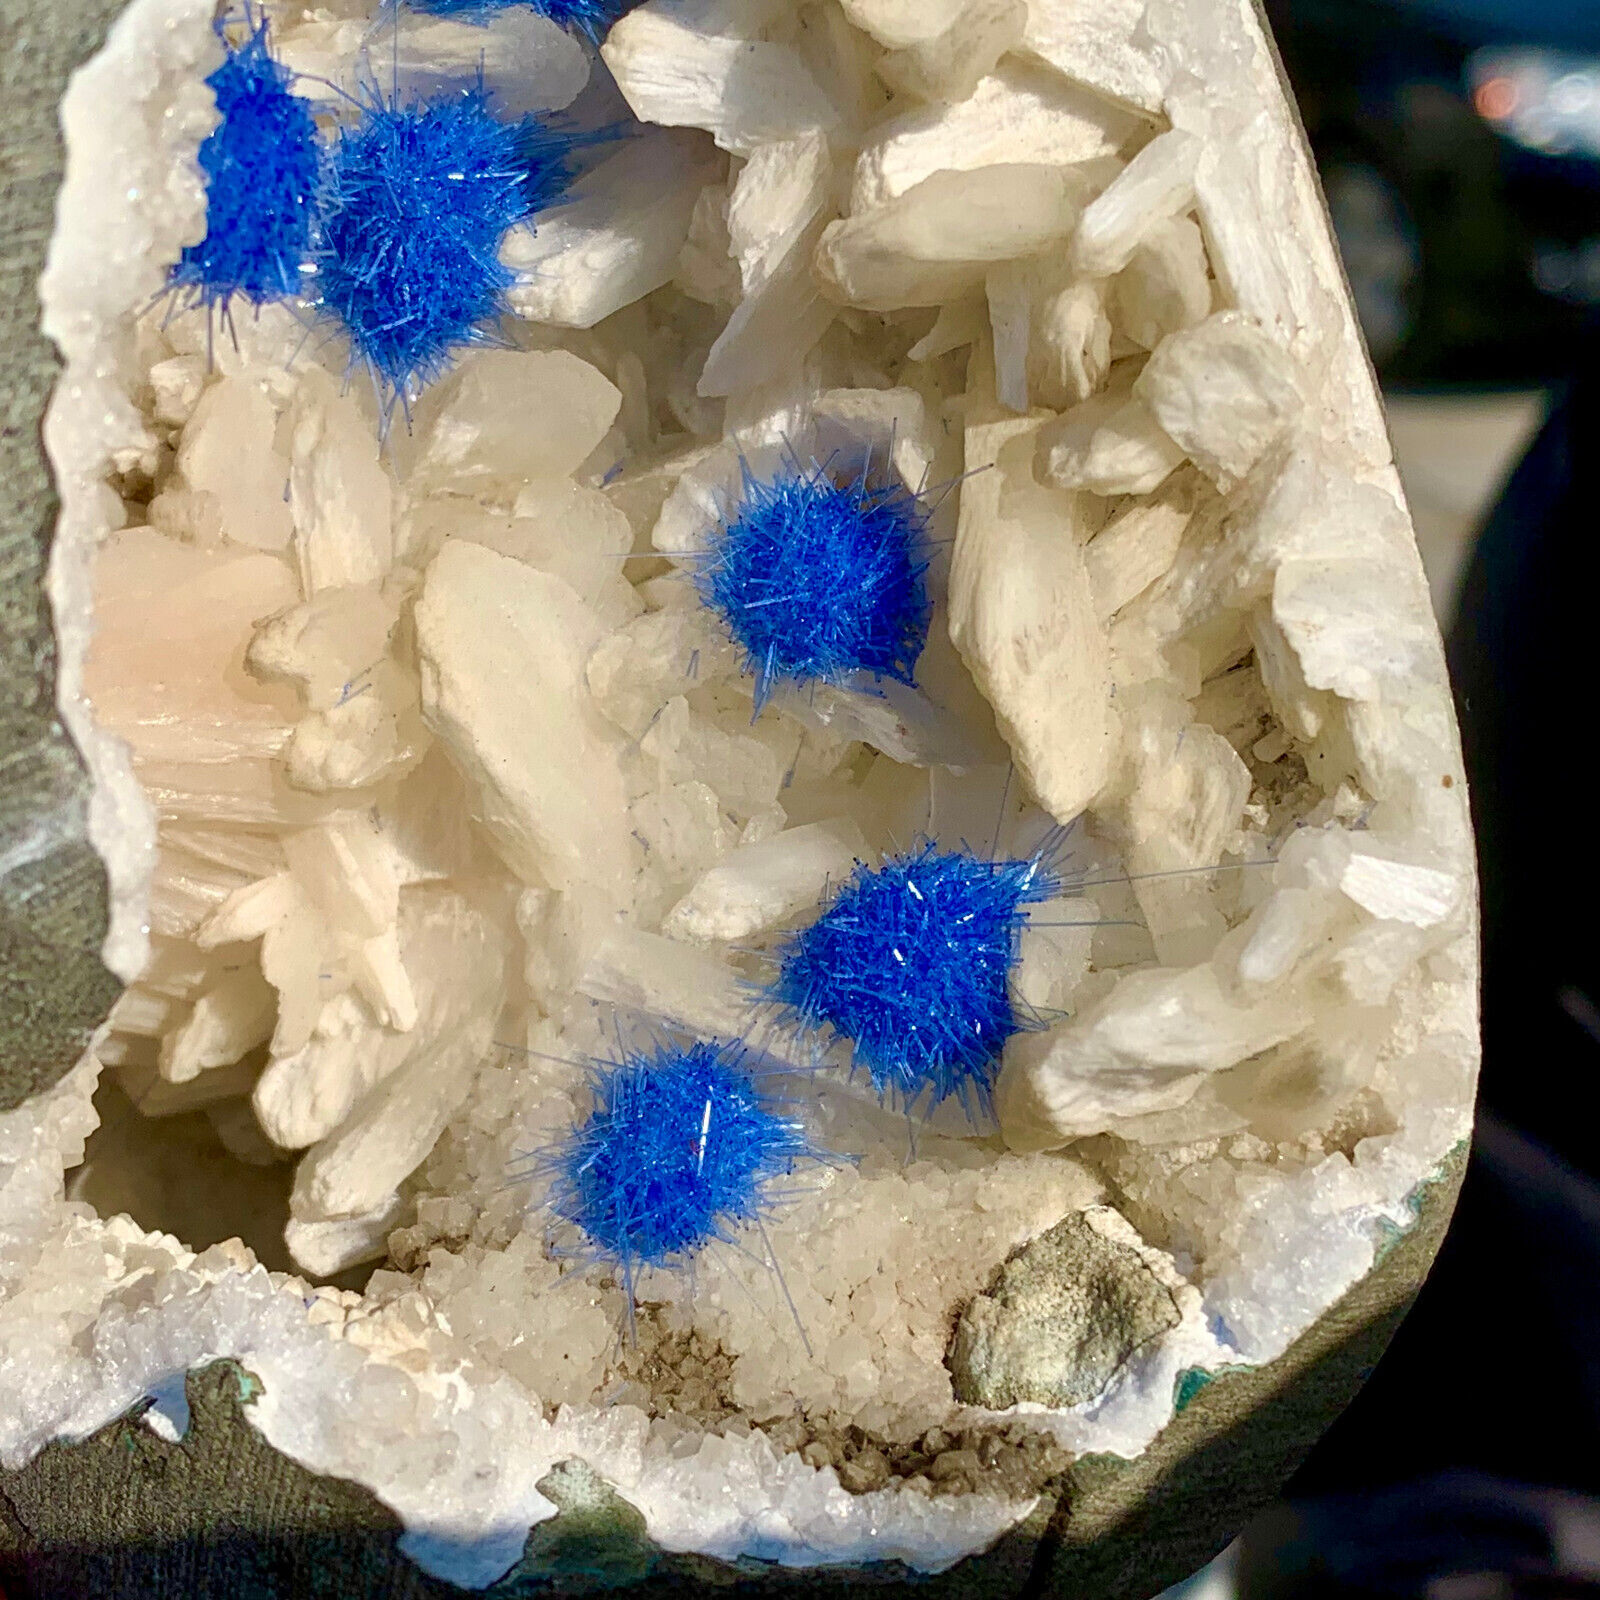 5.76LB Rare Moroccan blue magnesite and quartz crystal coexisting specimen